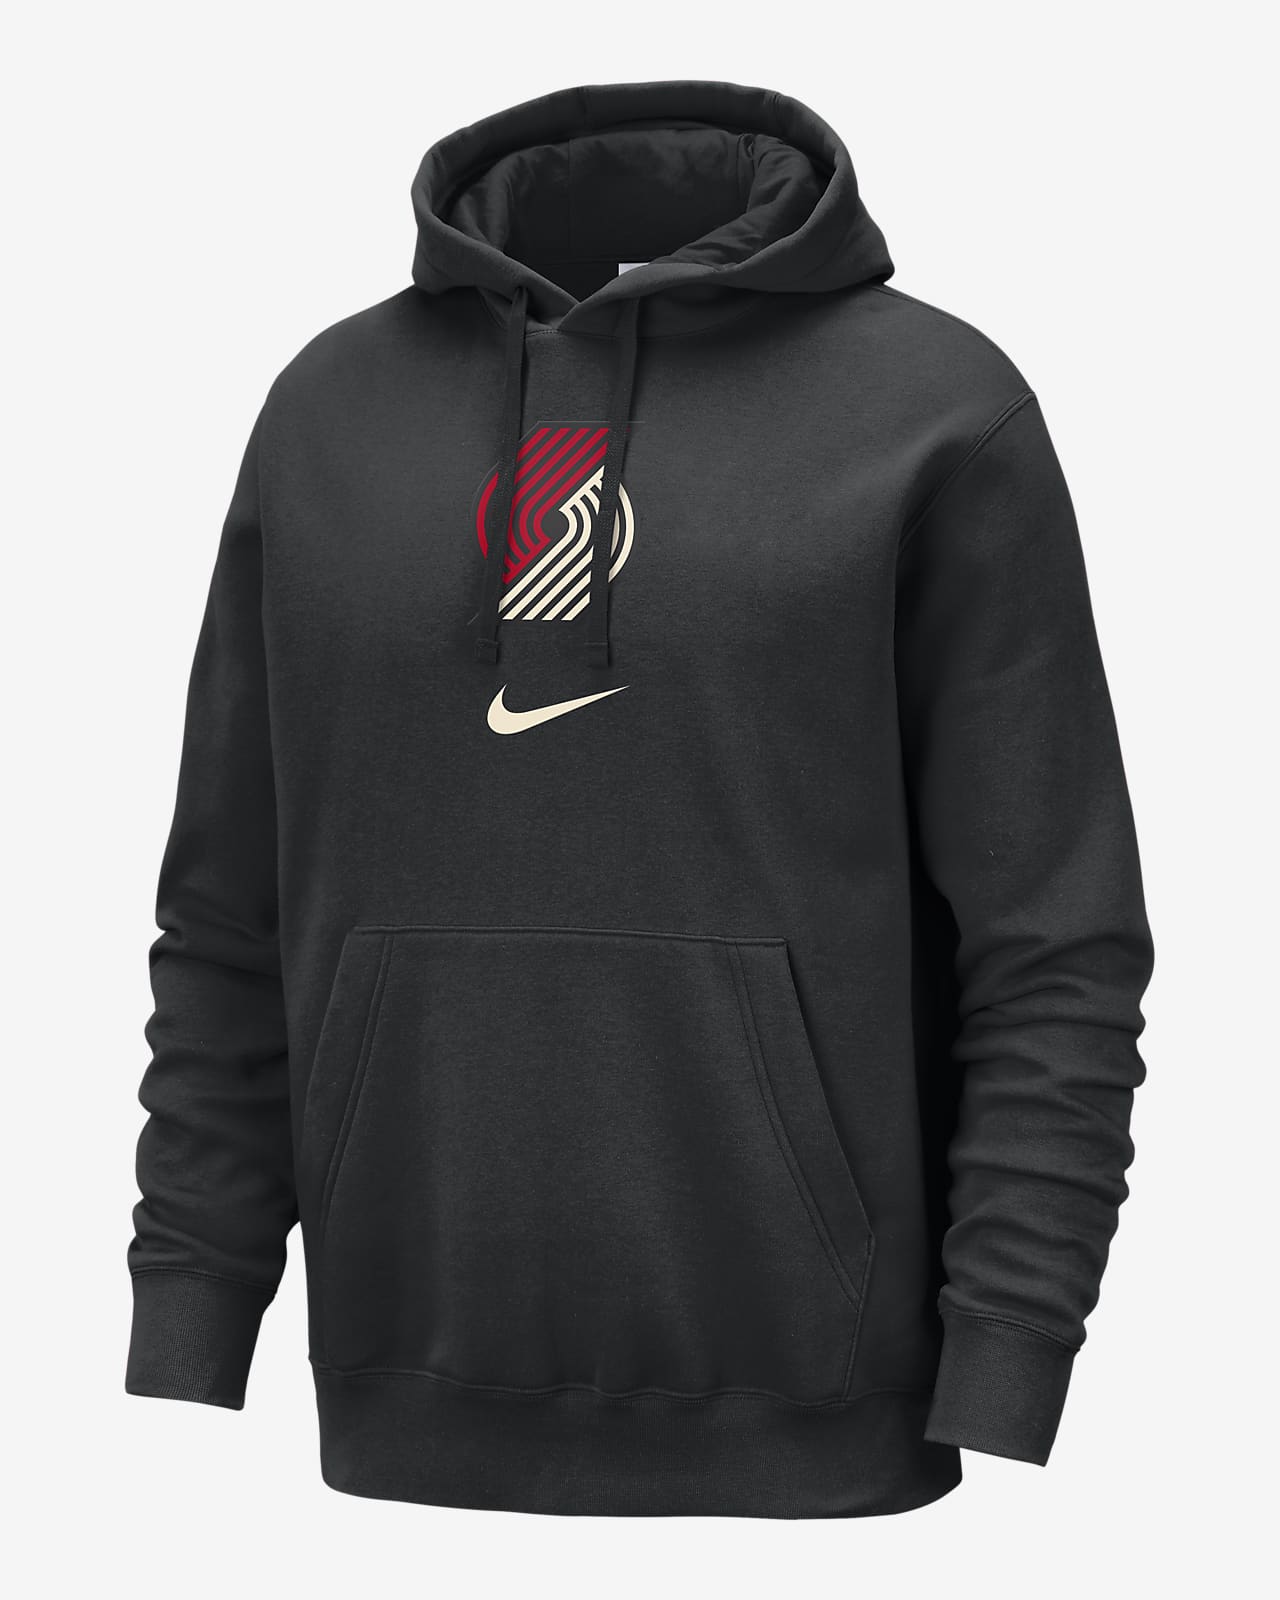 Portland Trail Blazers Club Fleece City Edition Sudadera con capucha Nike de la NBA - Hombre